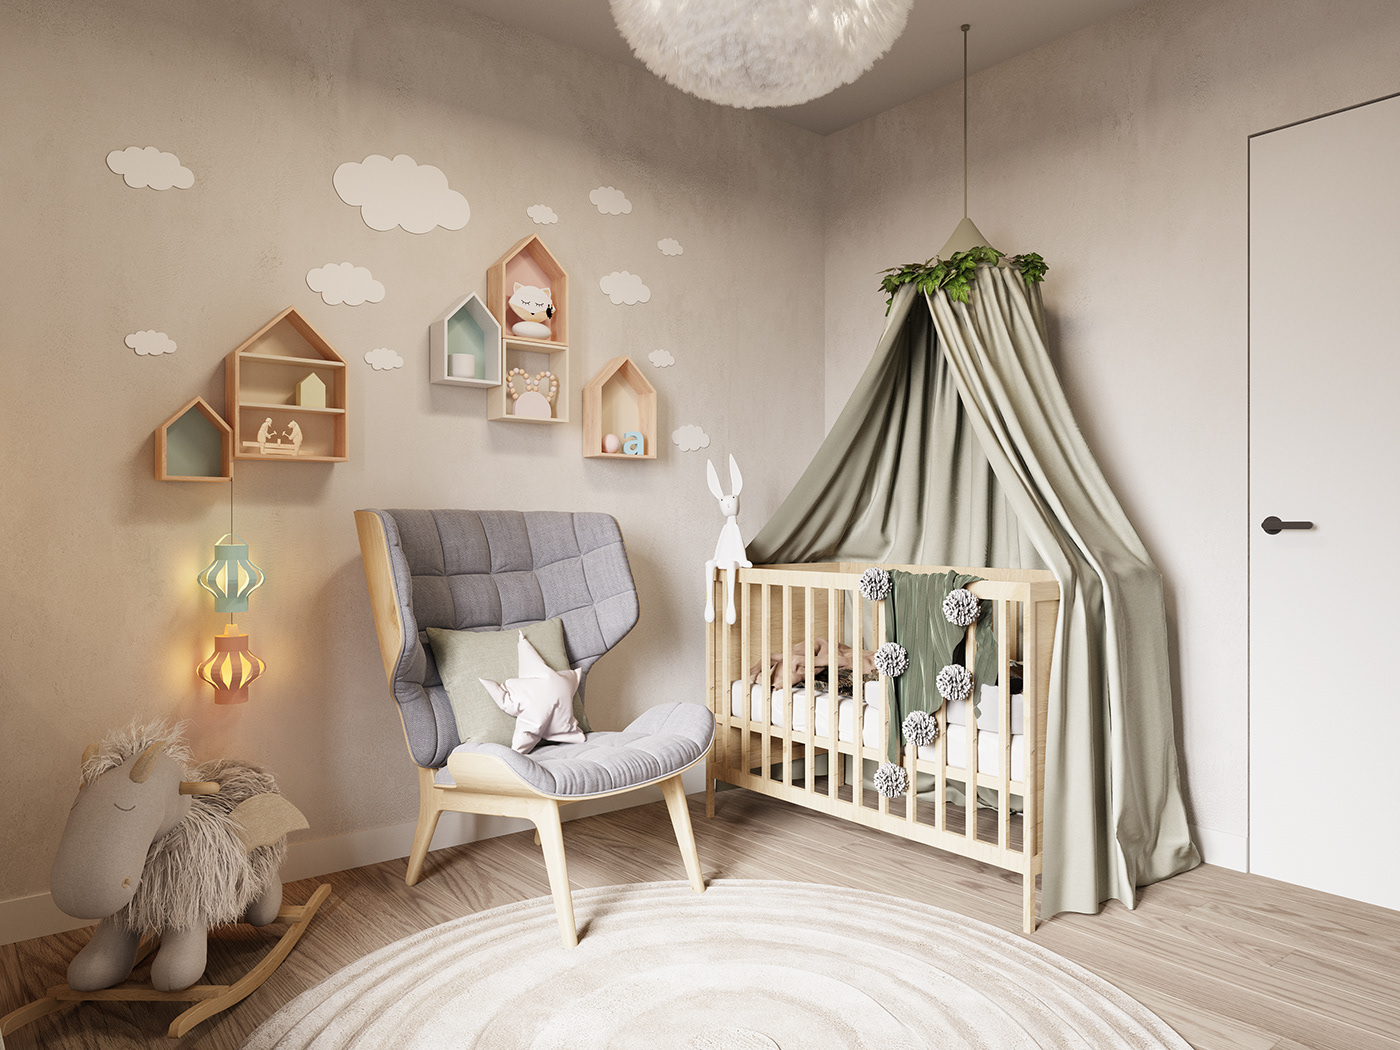 3D 3ds max architecture archviz childroom Interior marcin figiel meshform Render visualization